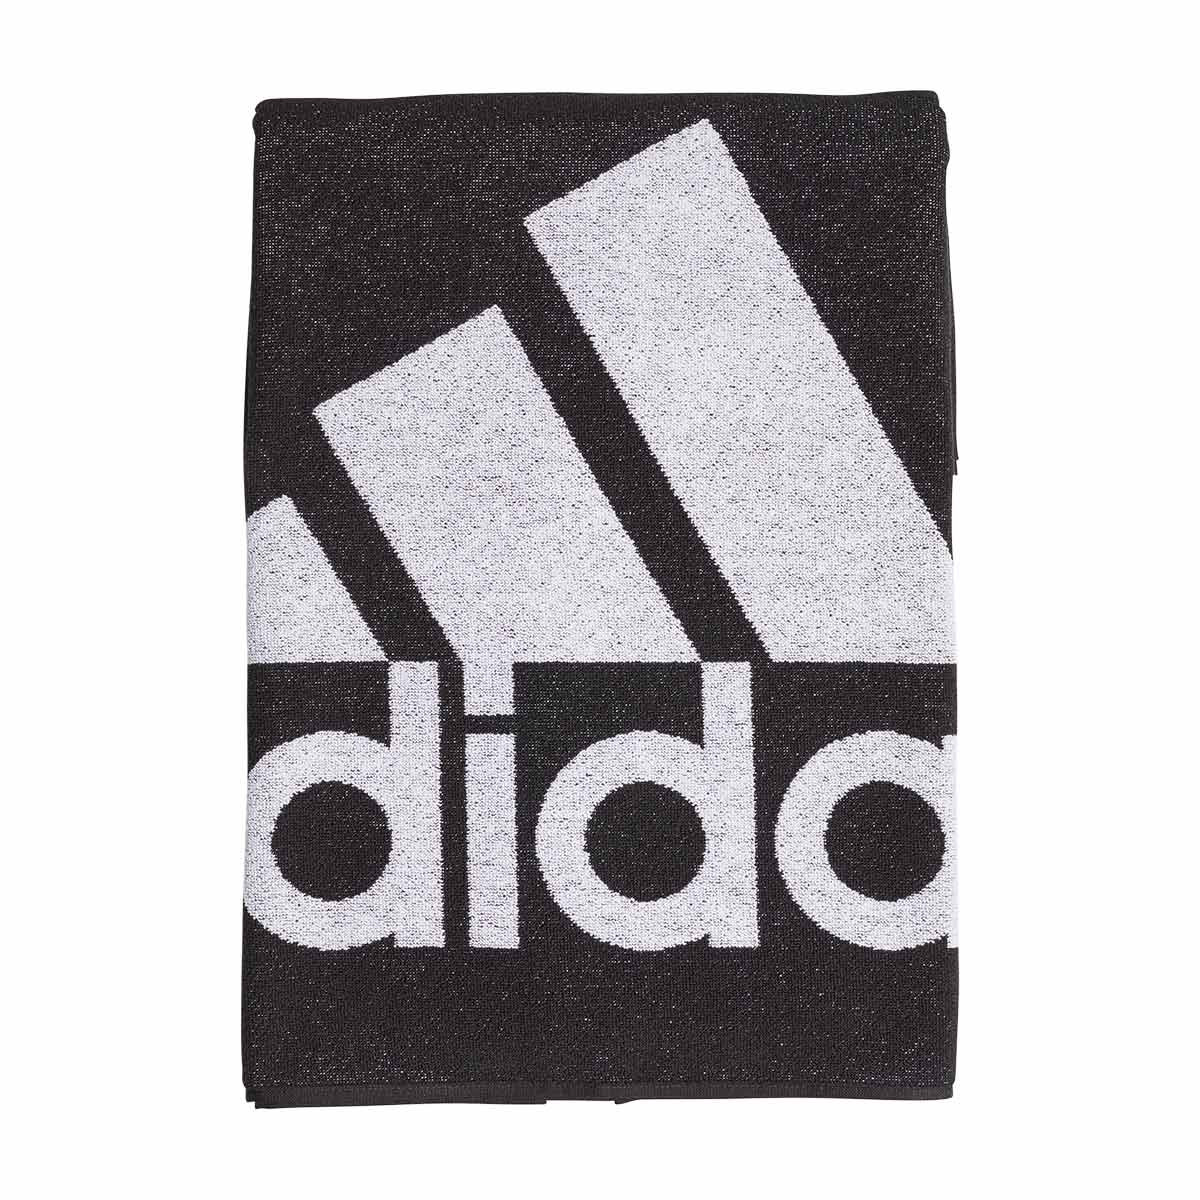 black adidas football towel